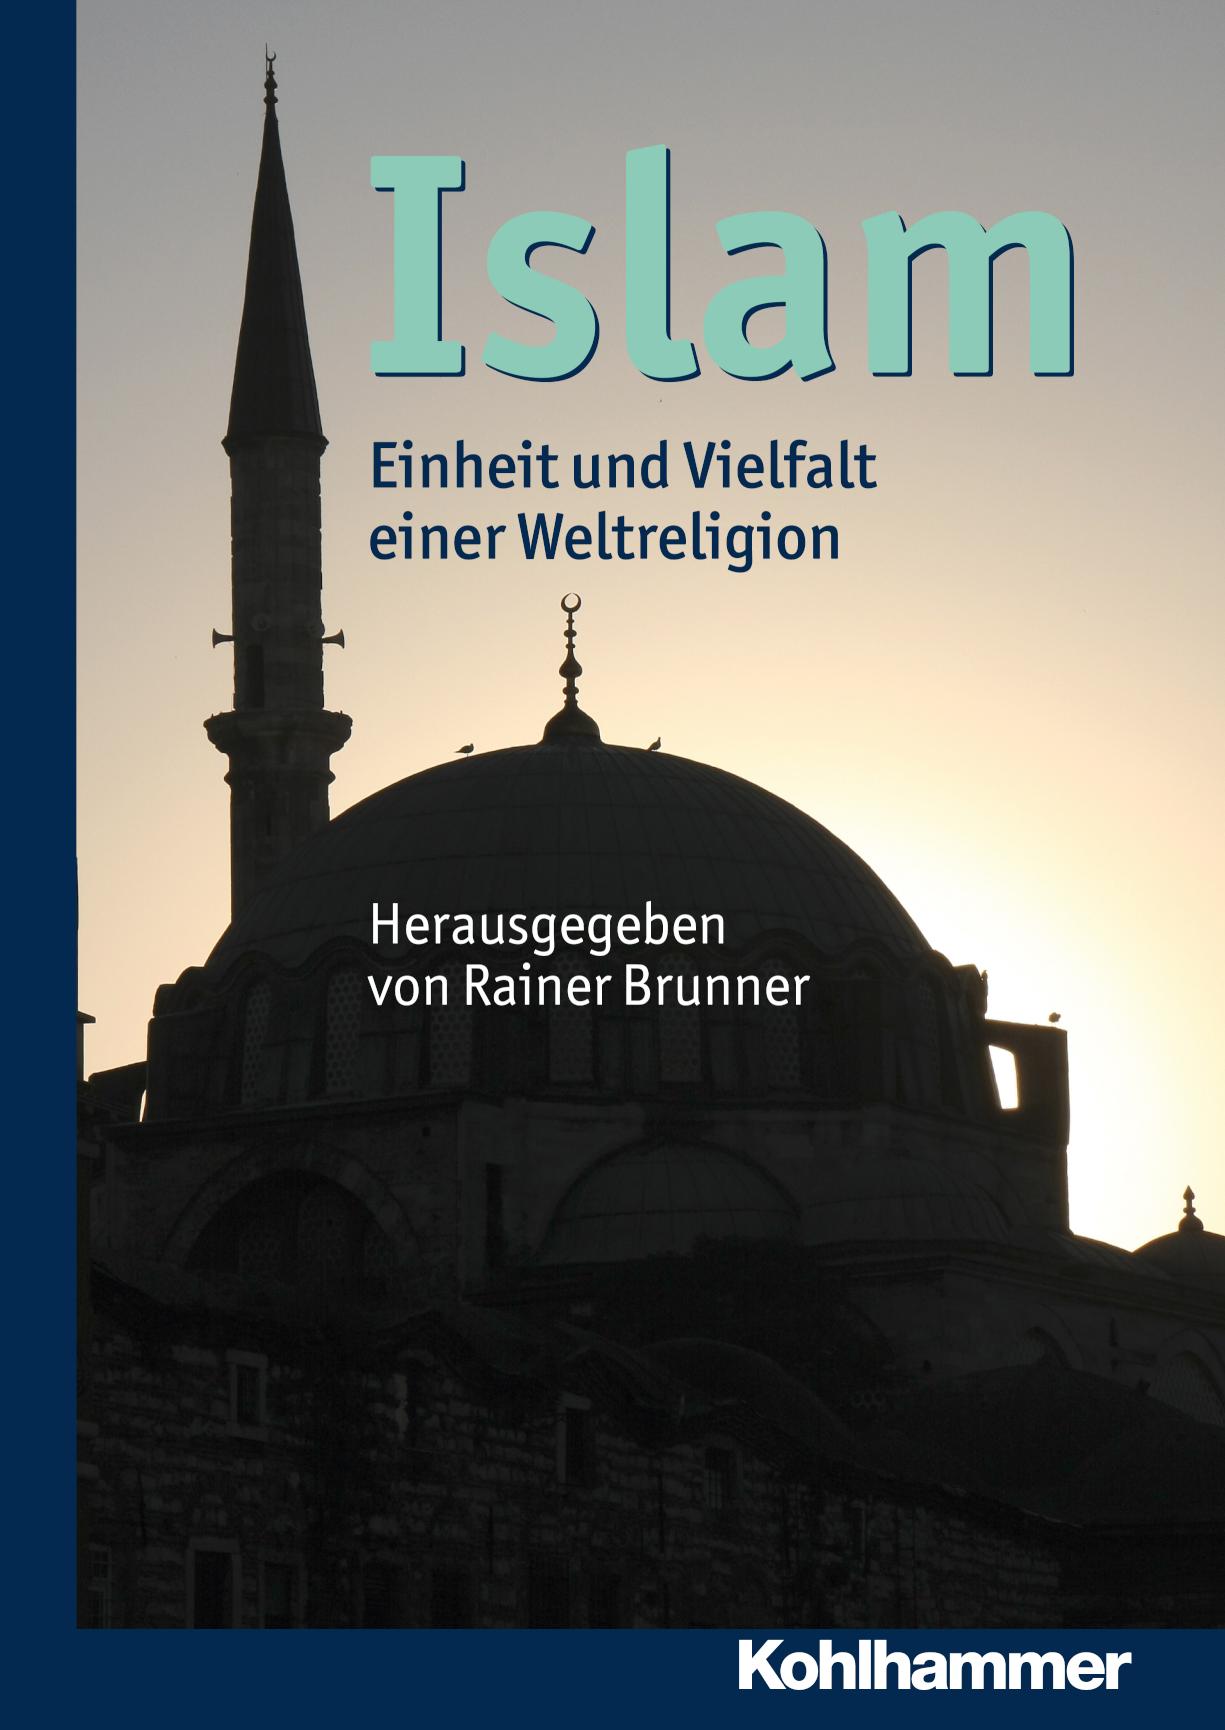 Islam Einheit und Vielfalt einer Weltreligion